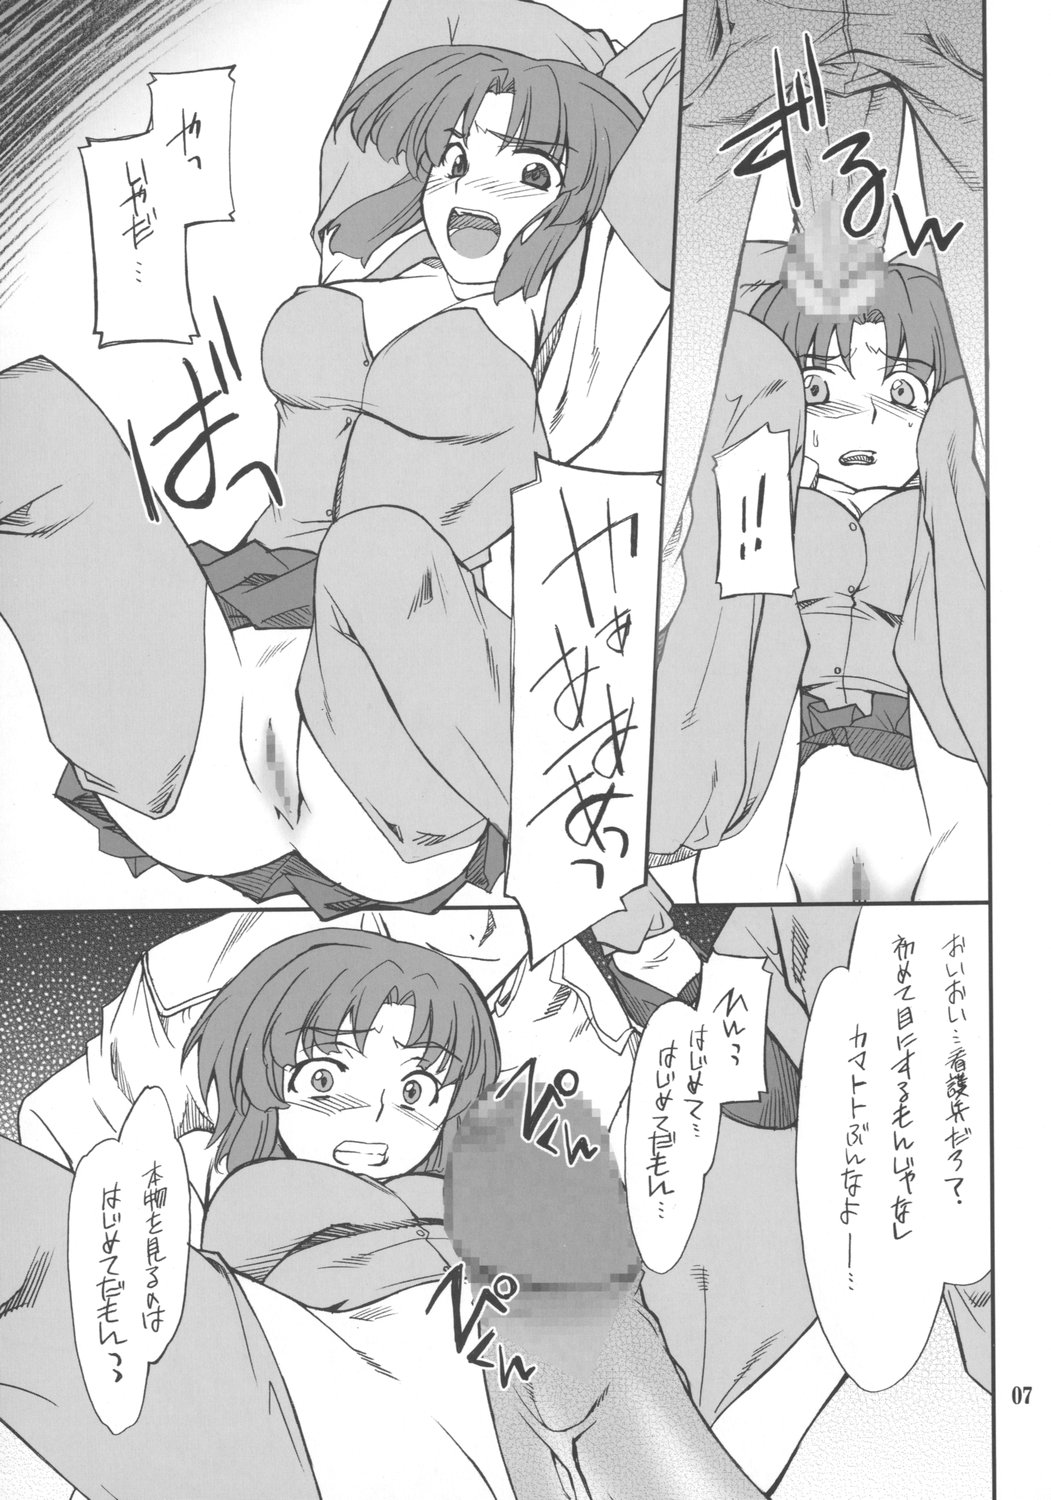 (SC34) [P-Forest (Hozumi Takashi)] INTERMISSION_if code_04: KUSUHA (Super Robot Wars OG: Original Generations) page 6 full